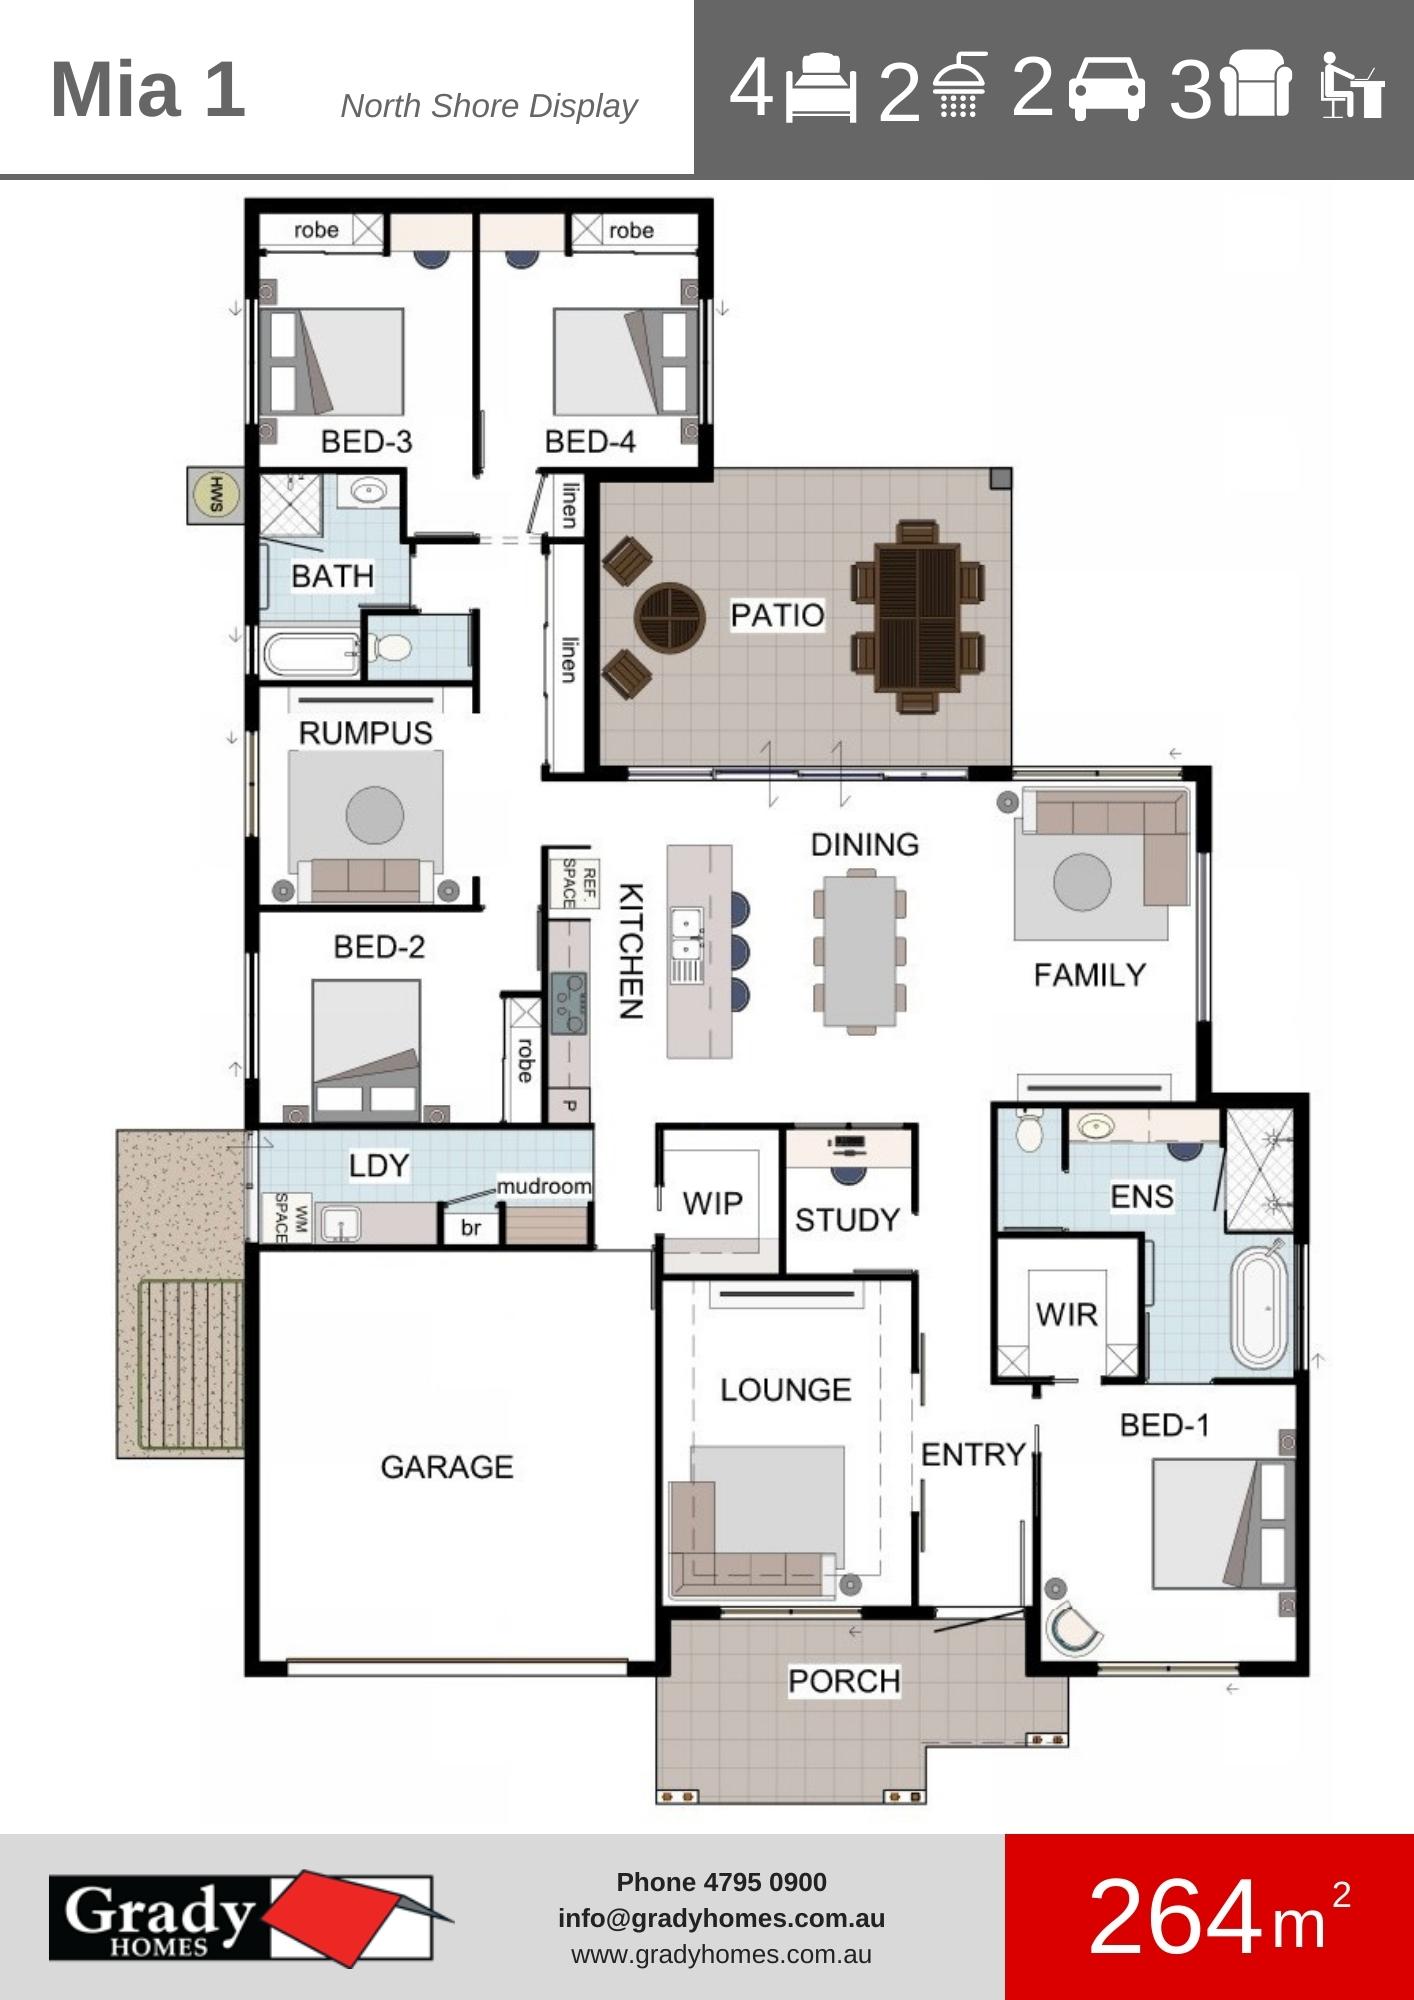 Mia 1 North Shore Display - Grady Homes Floor Plan Brochure (1)